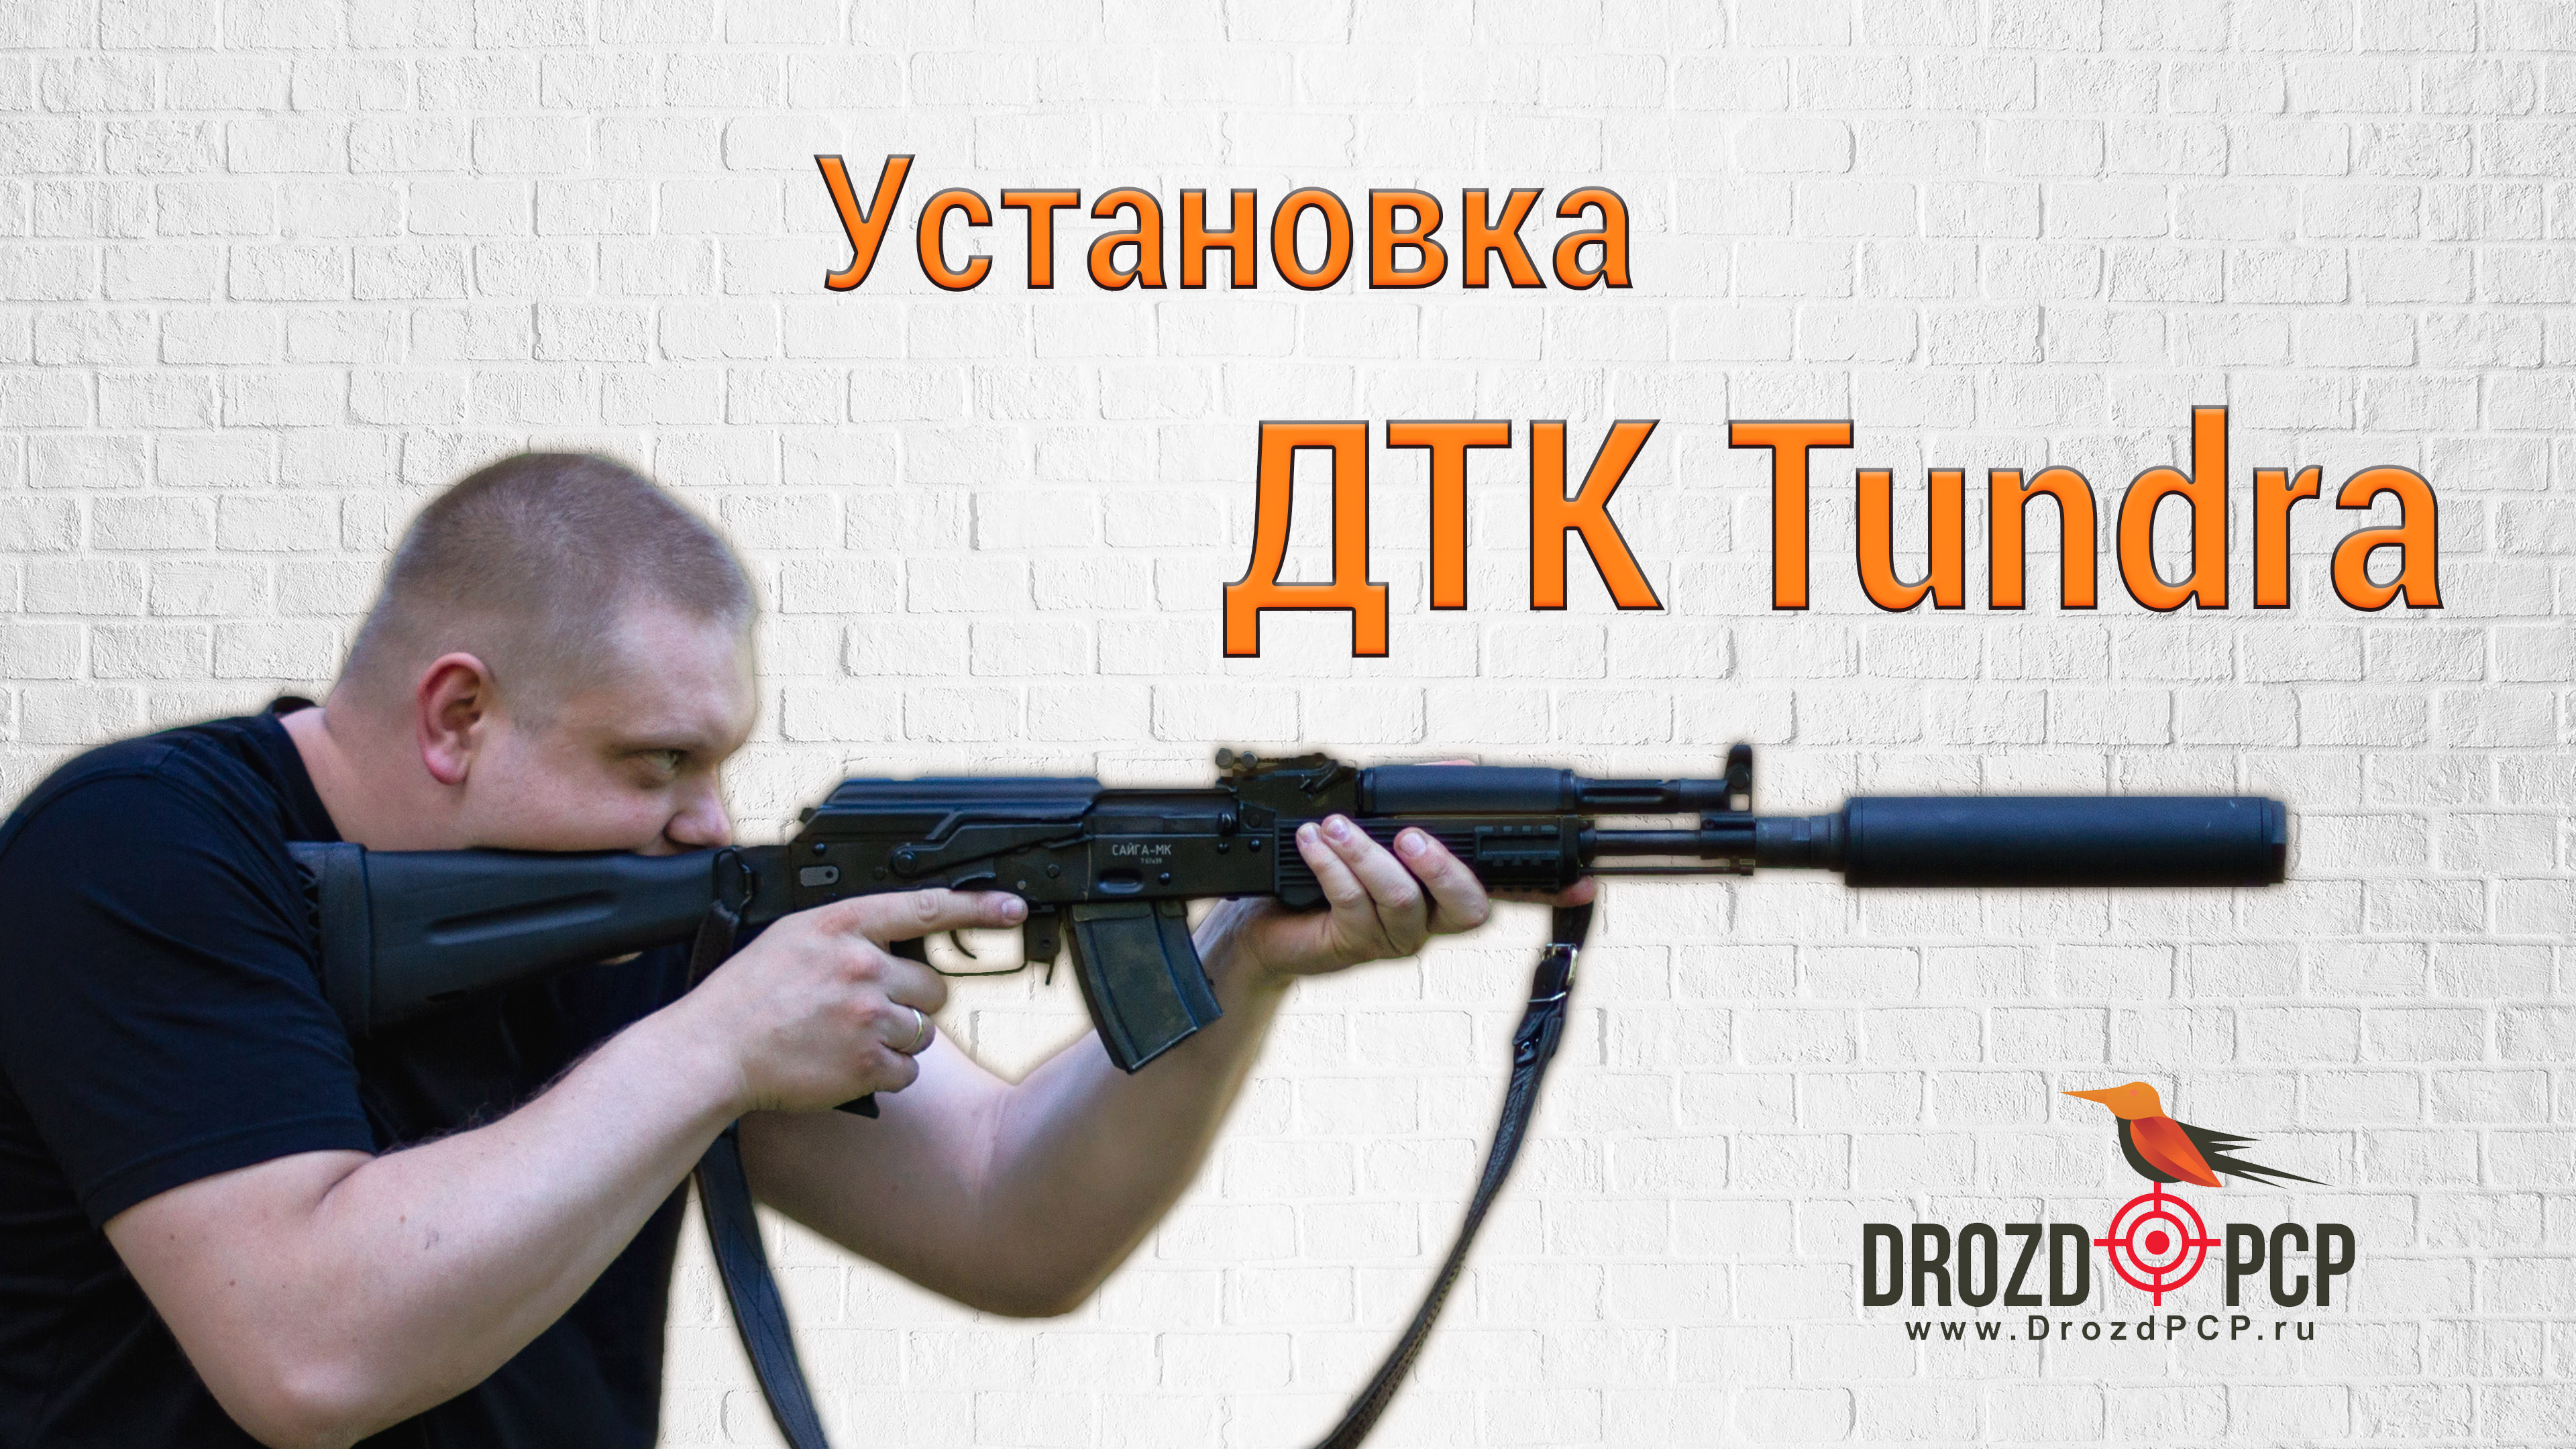 Инструкция по установке ДТК Tundra на АК-12